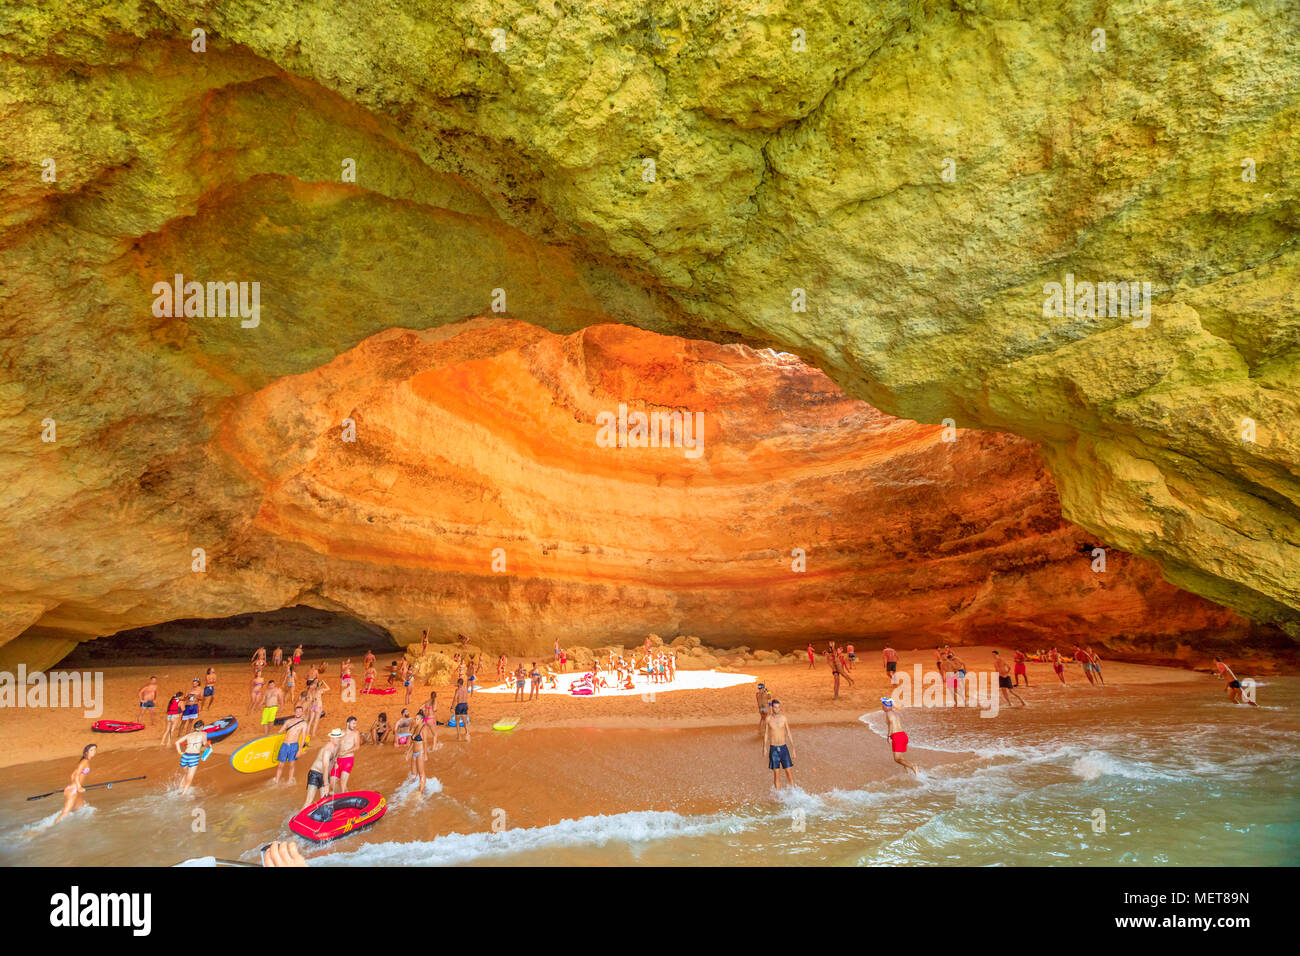 Benagil, Portugal - 23 août 2017 : les touristes sur la plage de sable à l'intérieur de la grotte de la mer énumérés dans le top 10 des meilleures caves. Les personnes qui visitent la grotte de Benagil Benagil piscine plage ou en bateau. Banque D'Images